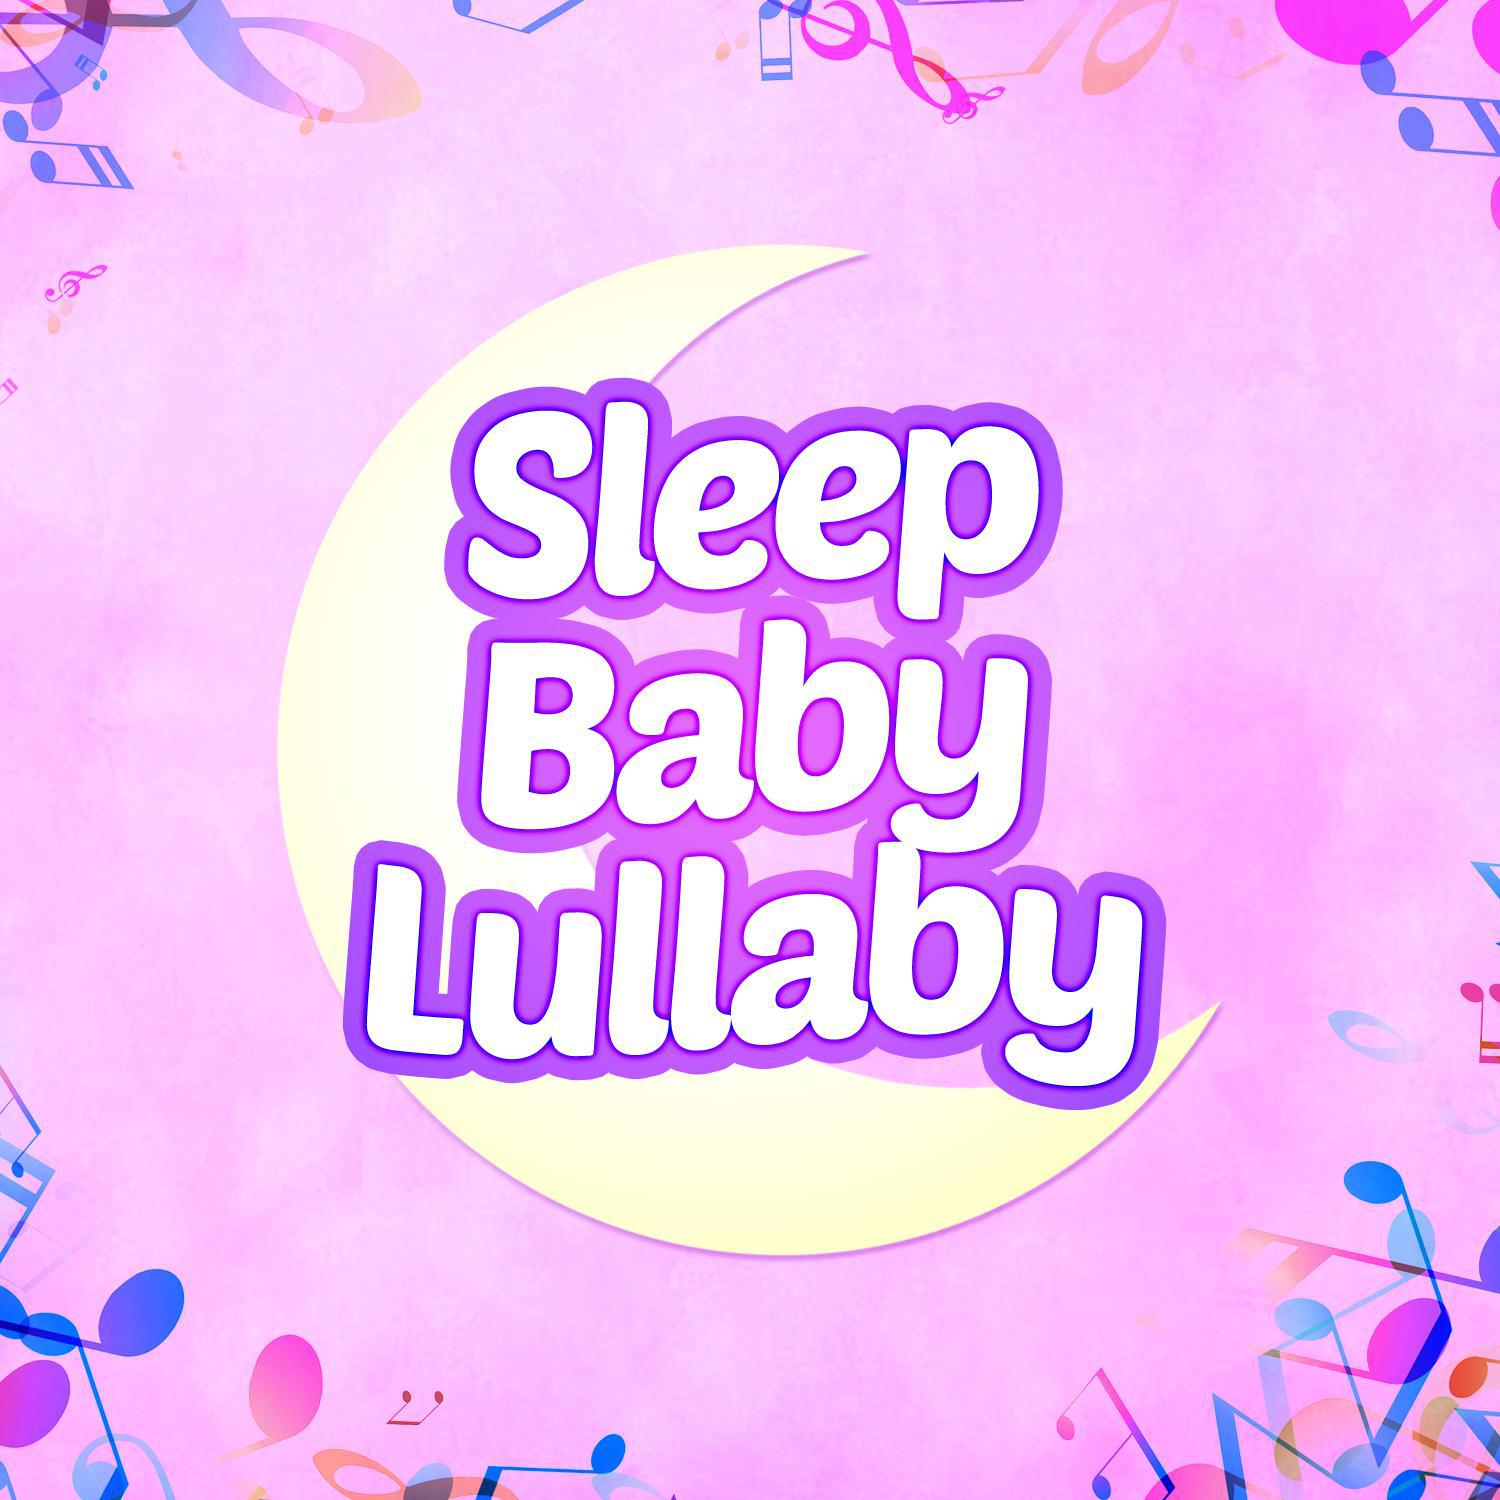 Sleep Baby Lullaby